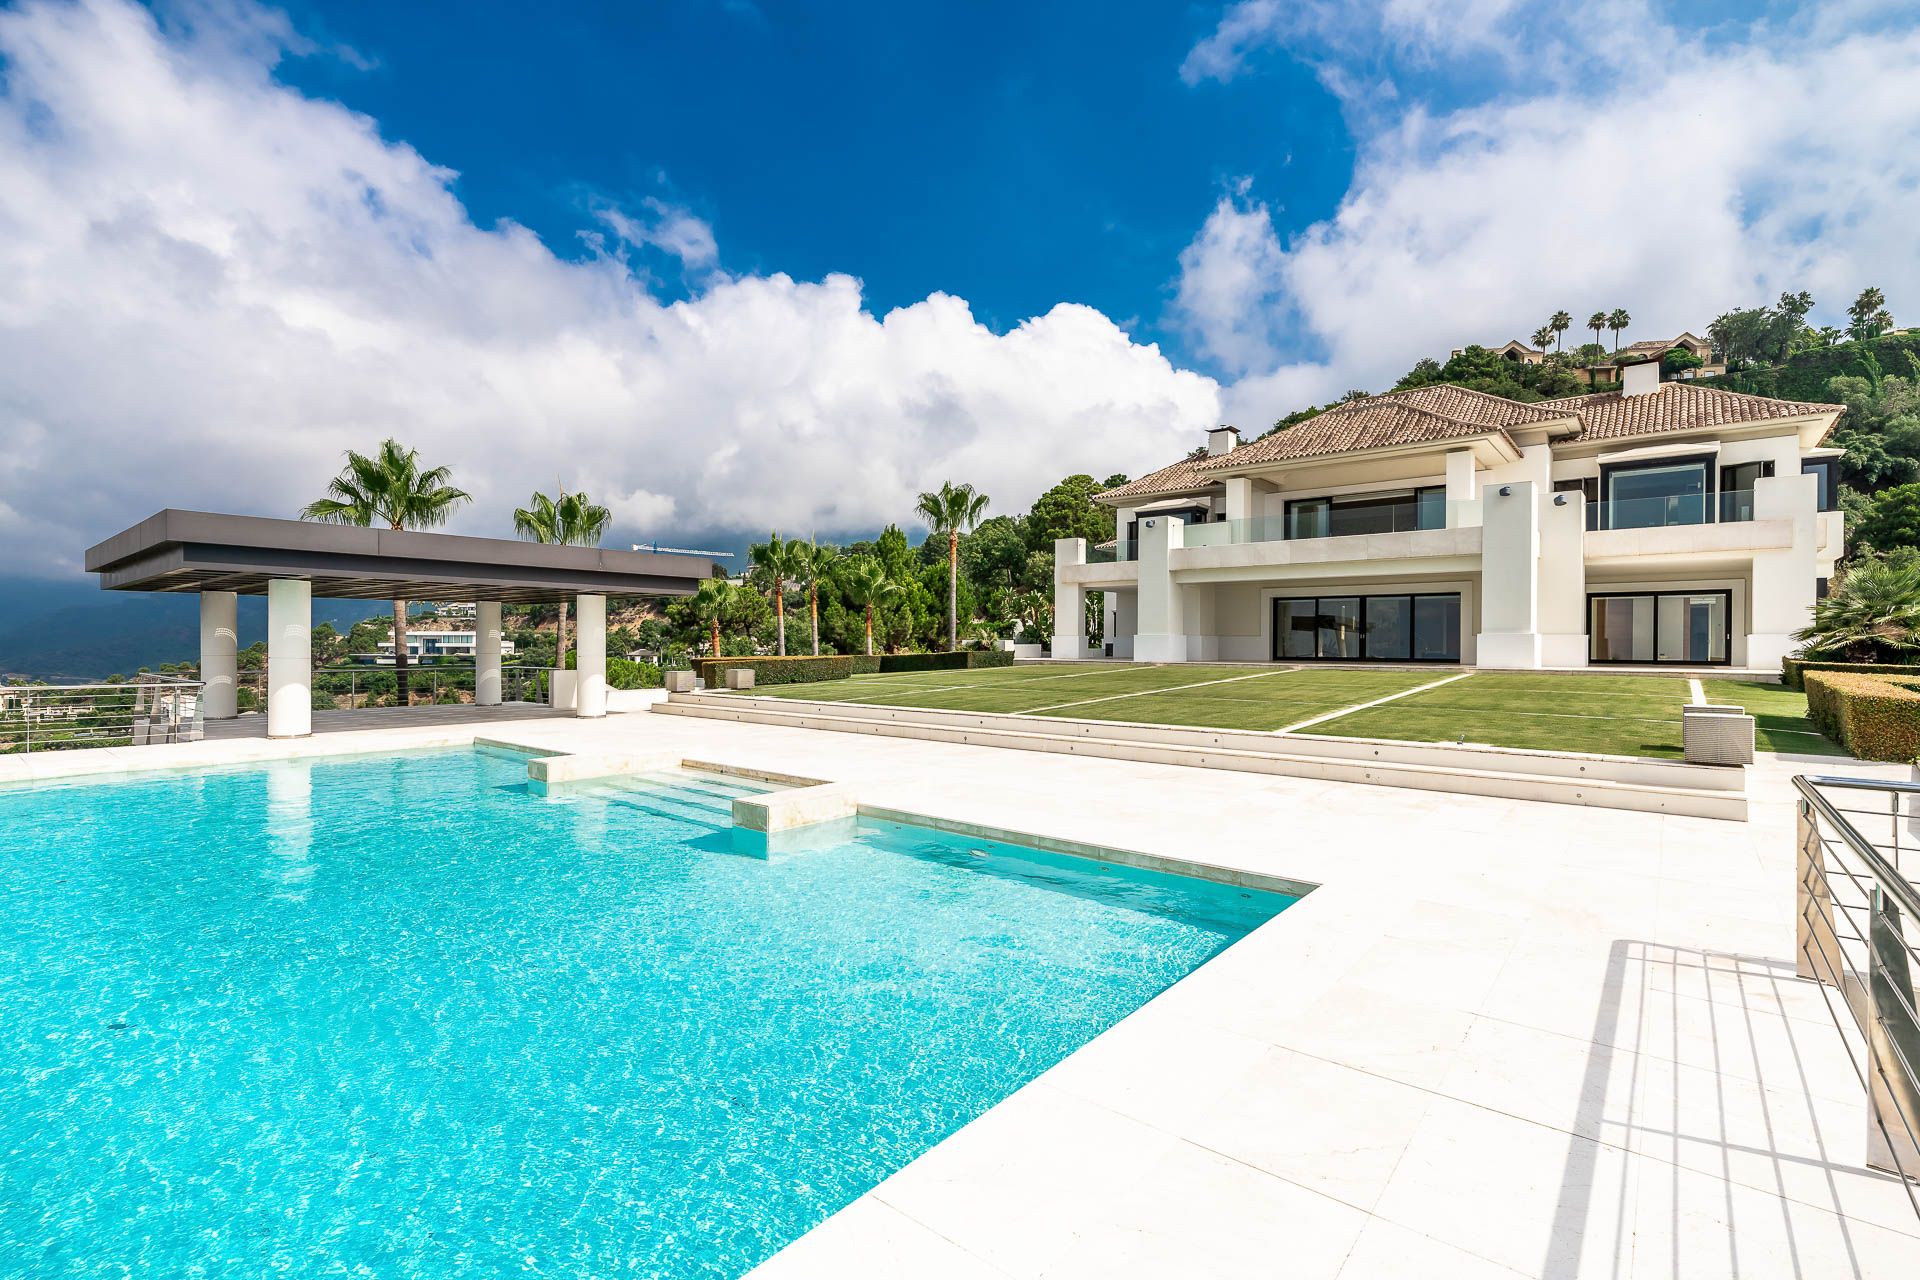 Spectacular mansion with breathtaking views in La Zagaleta, Benahavis | Engel & Völkers Marbella